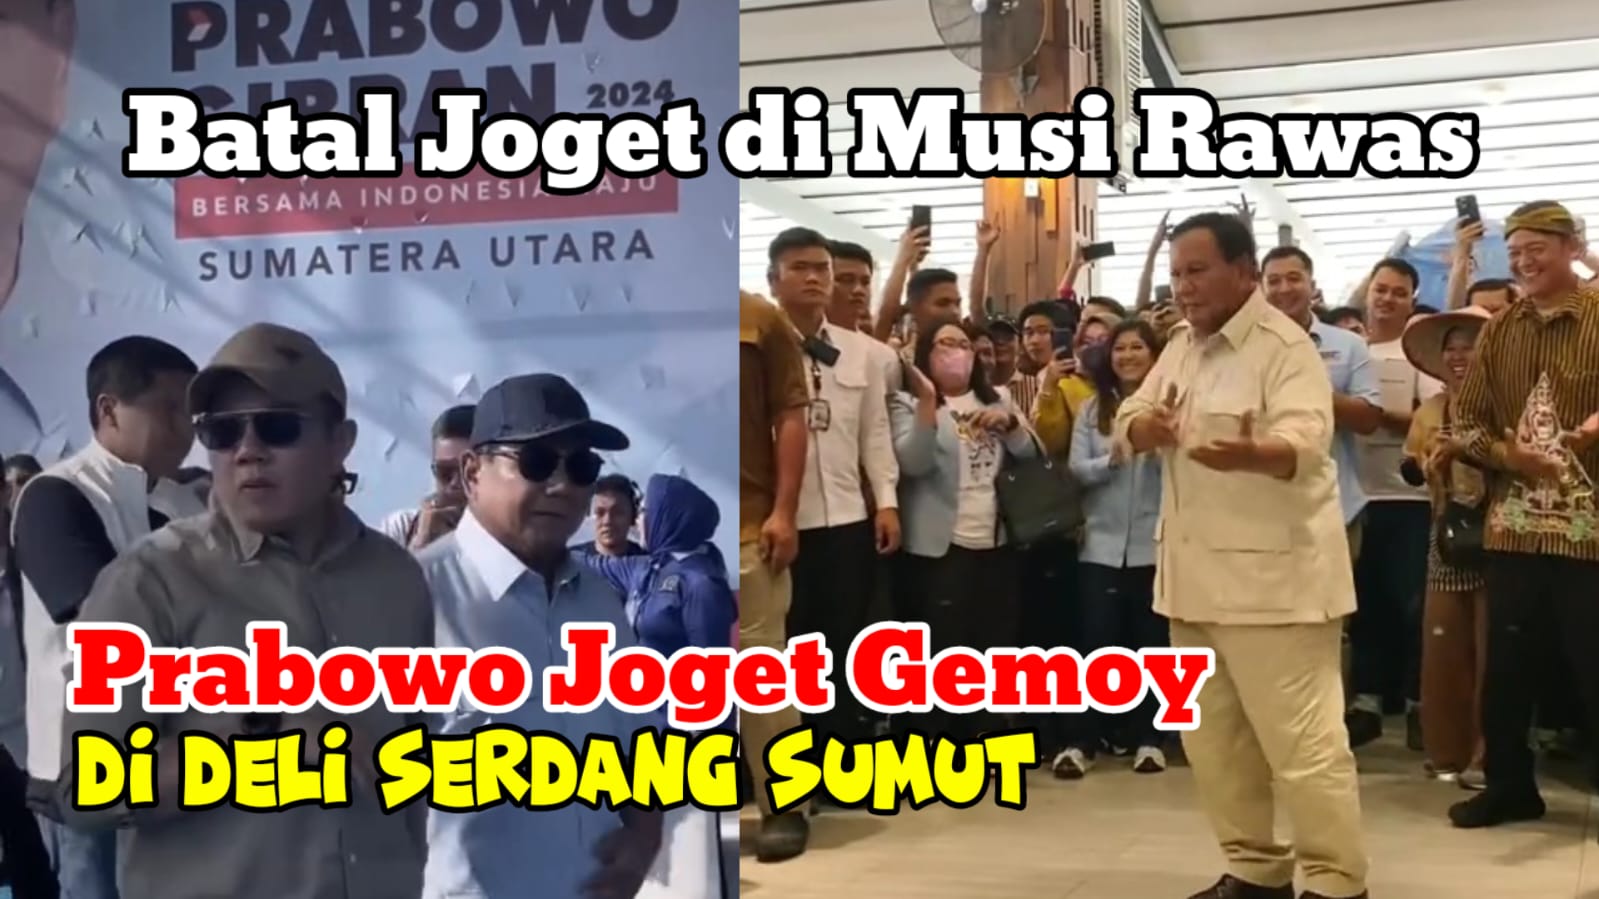 Batal Joget di Musi Rawas, Prabowo Joget Gemoy di Deli Serdang, Sumut